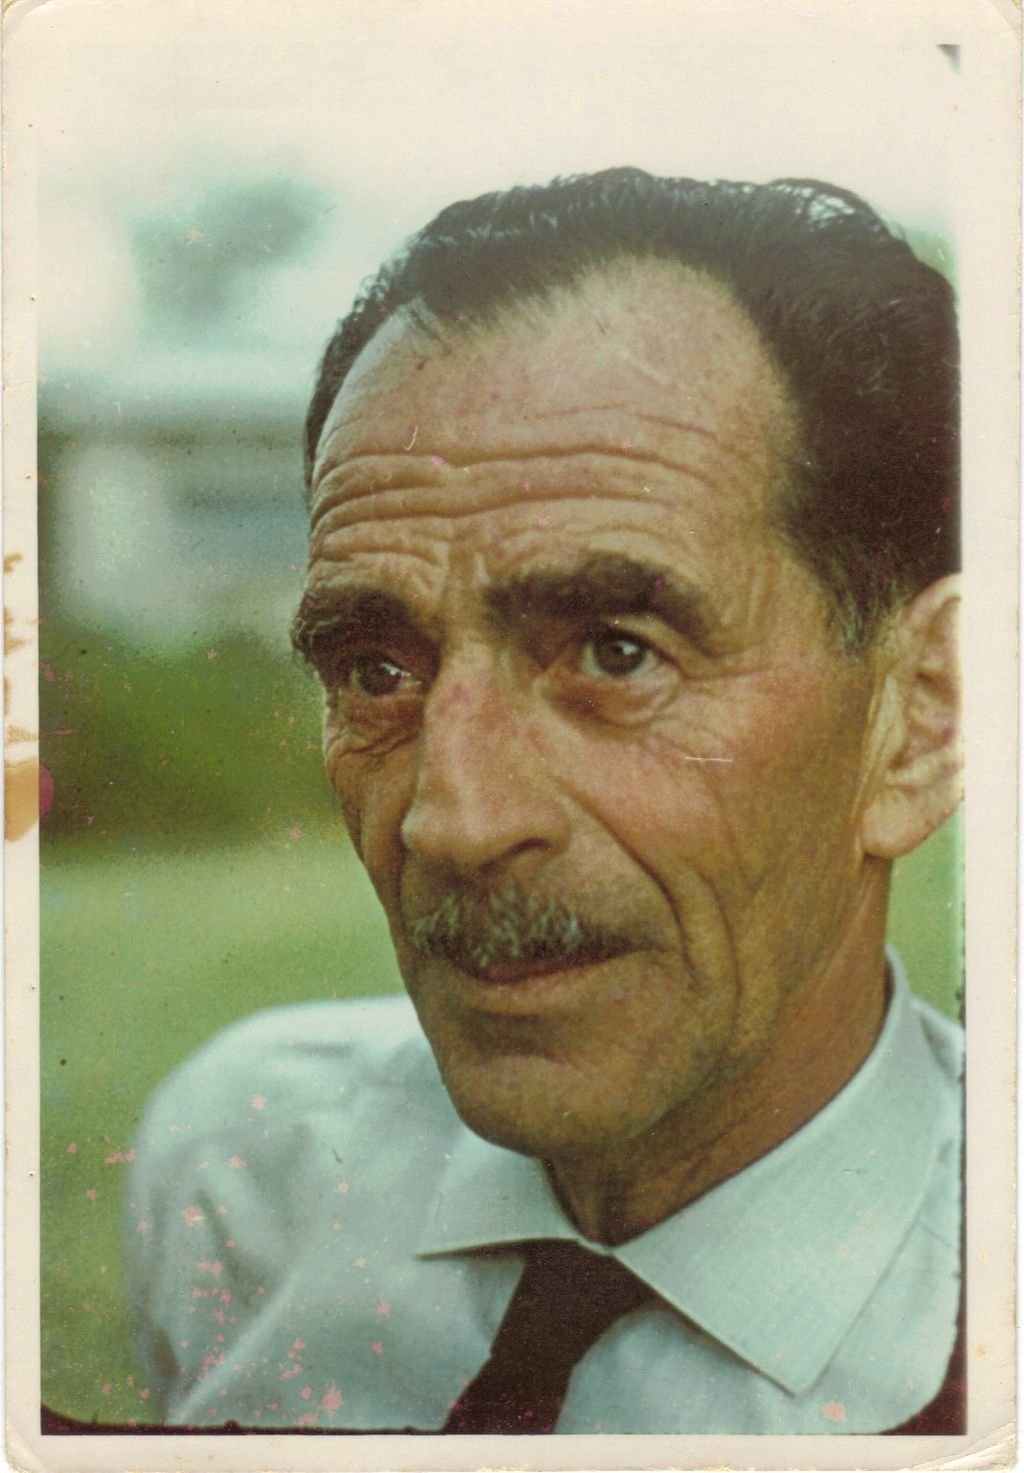 1973/74 - נשיא אוטו שטיינר ז"ל